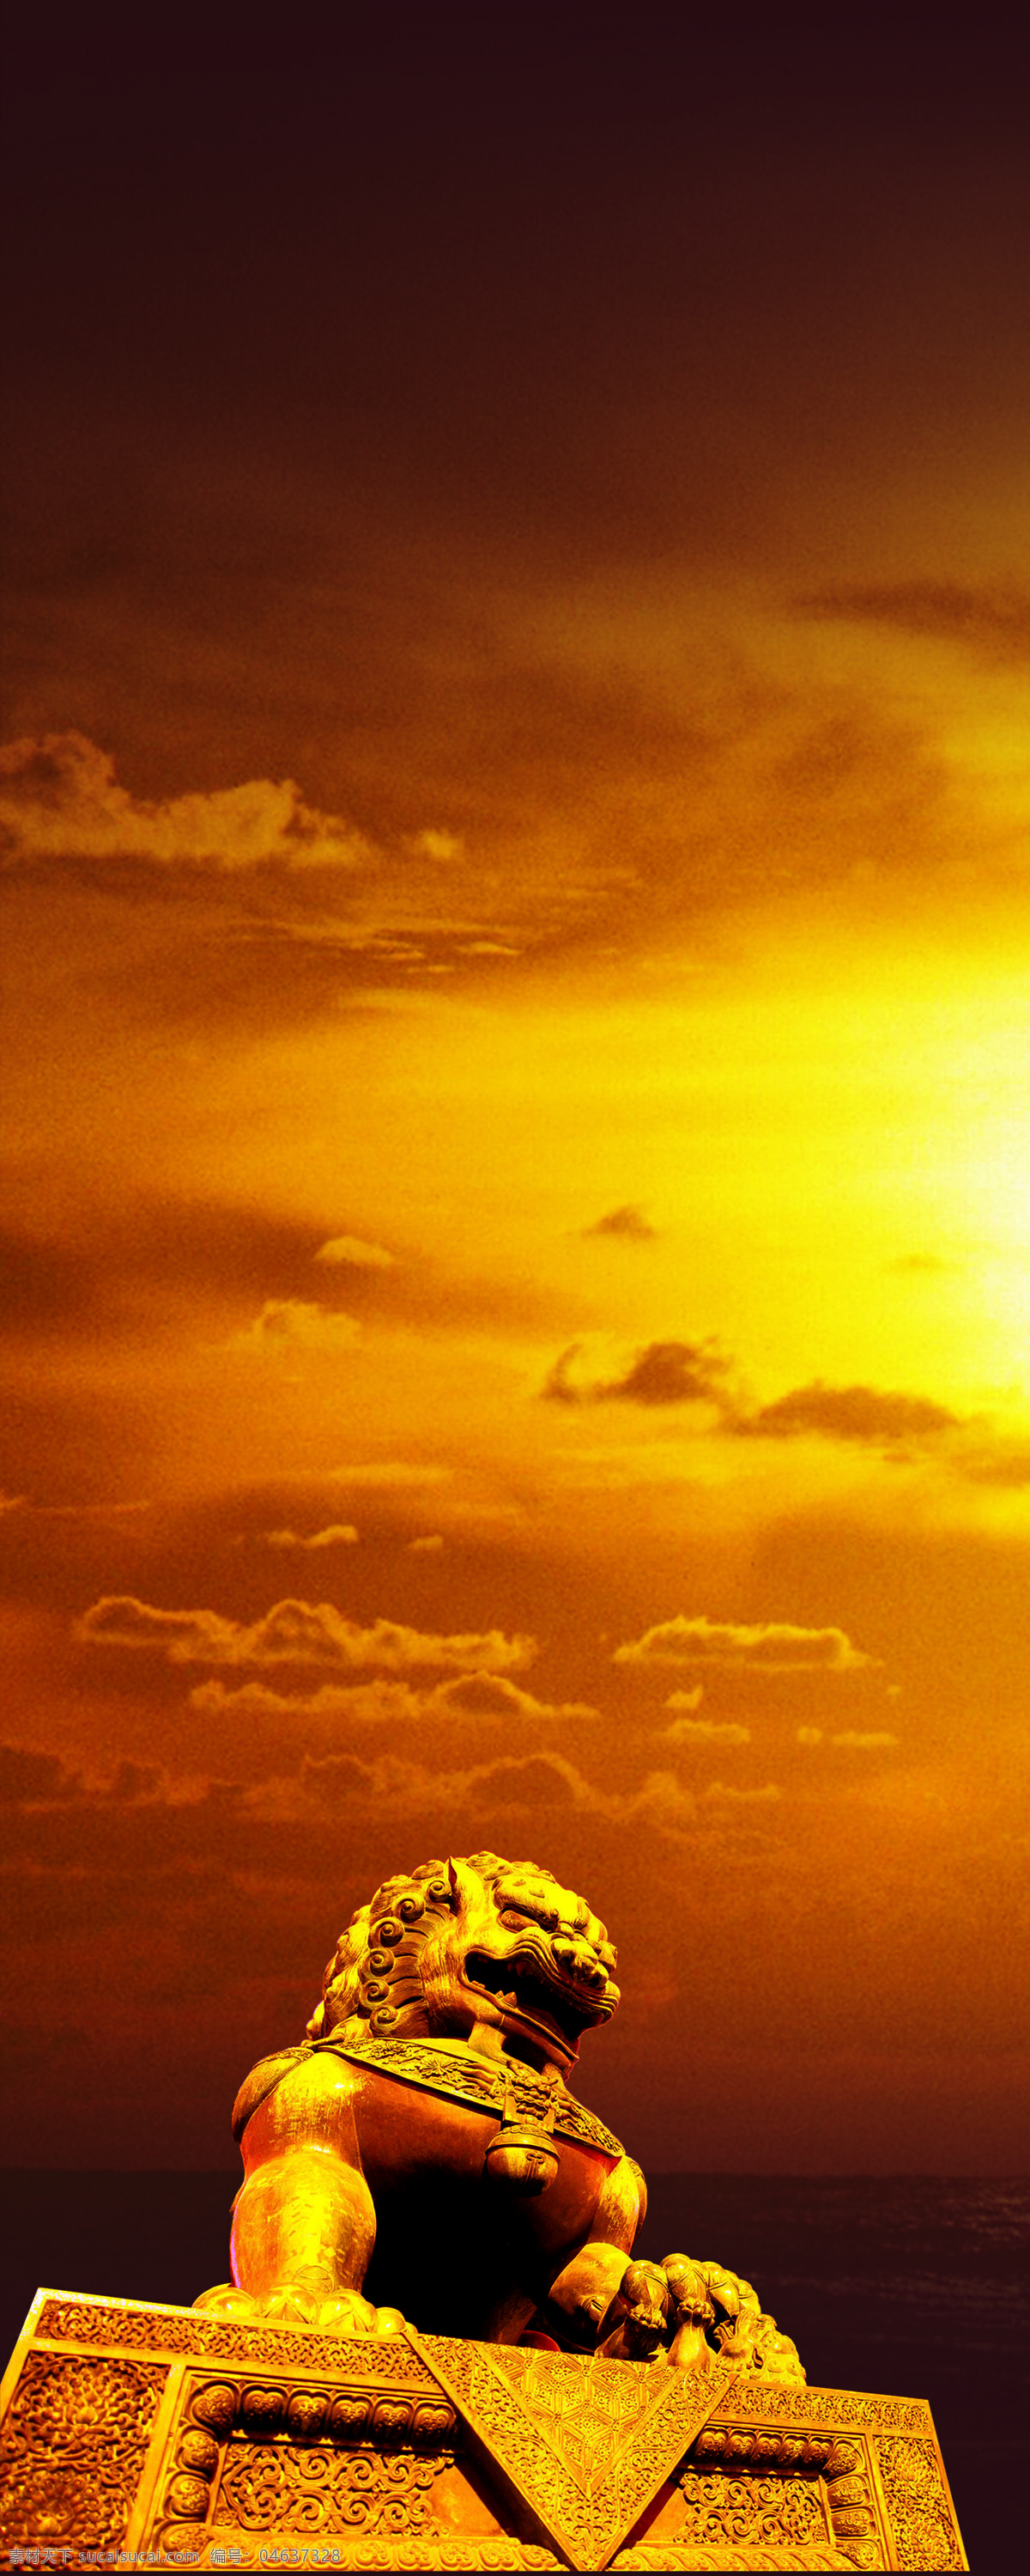 天空与狮子 金色 夕阳 云彩 狮子 自然景观 自然风景 摄影图库